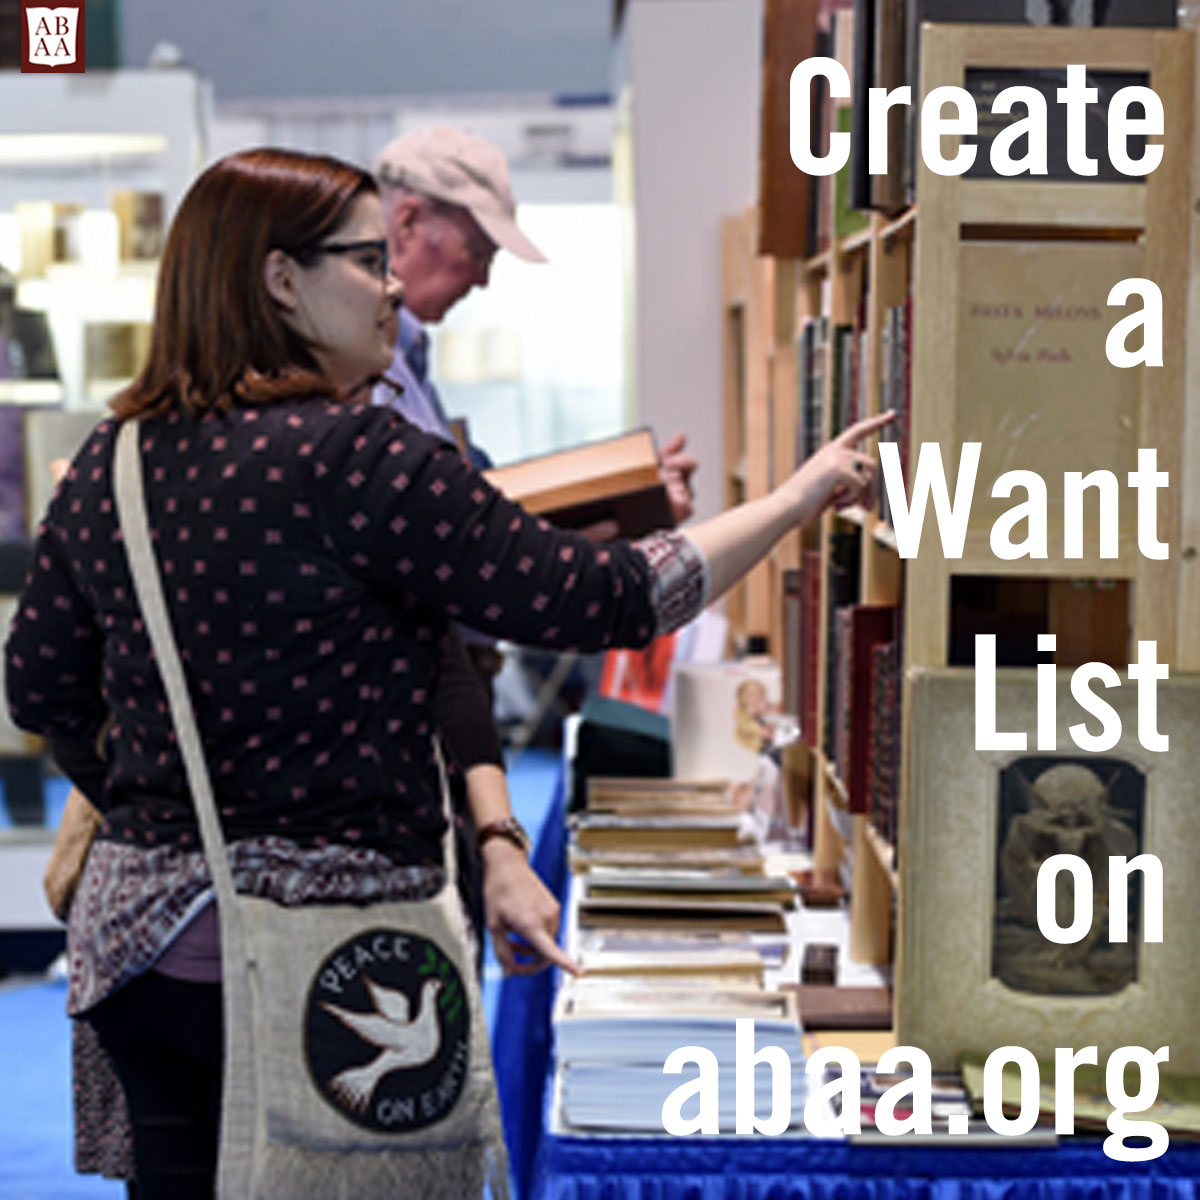 Create a Want List on abaa.org...